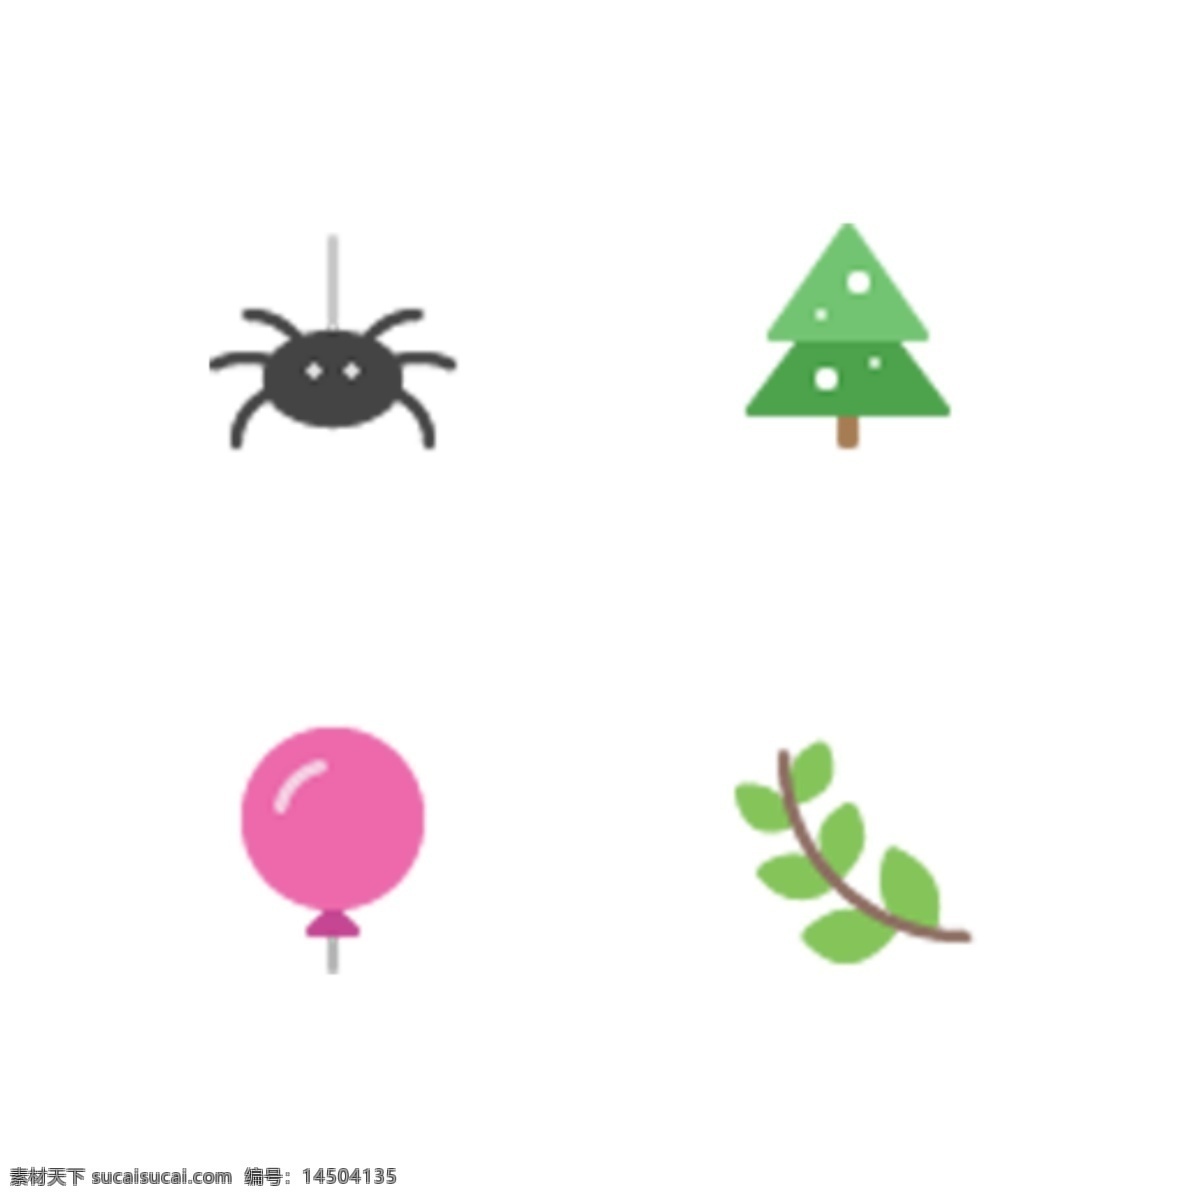 彩色 创意 圣诞节 图标 元素 蜘蛛 叶子 气球 植物 松树 扁平化 卡通插画 ui 节日 搞怪